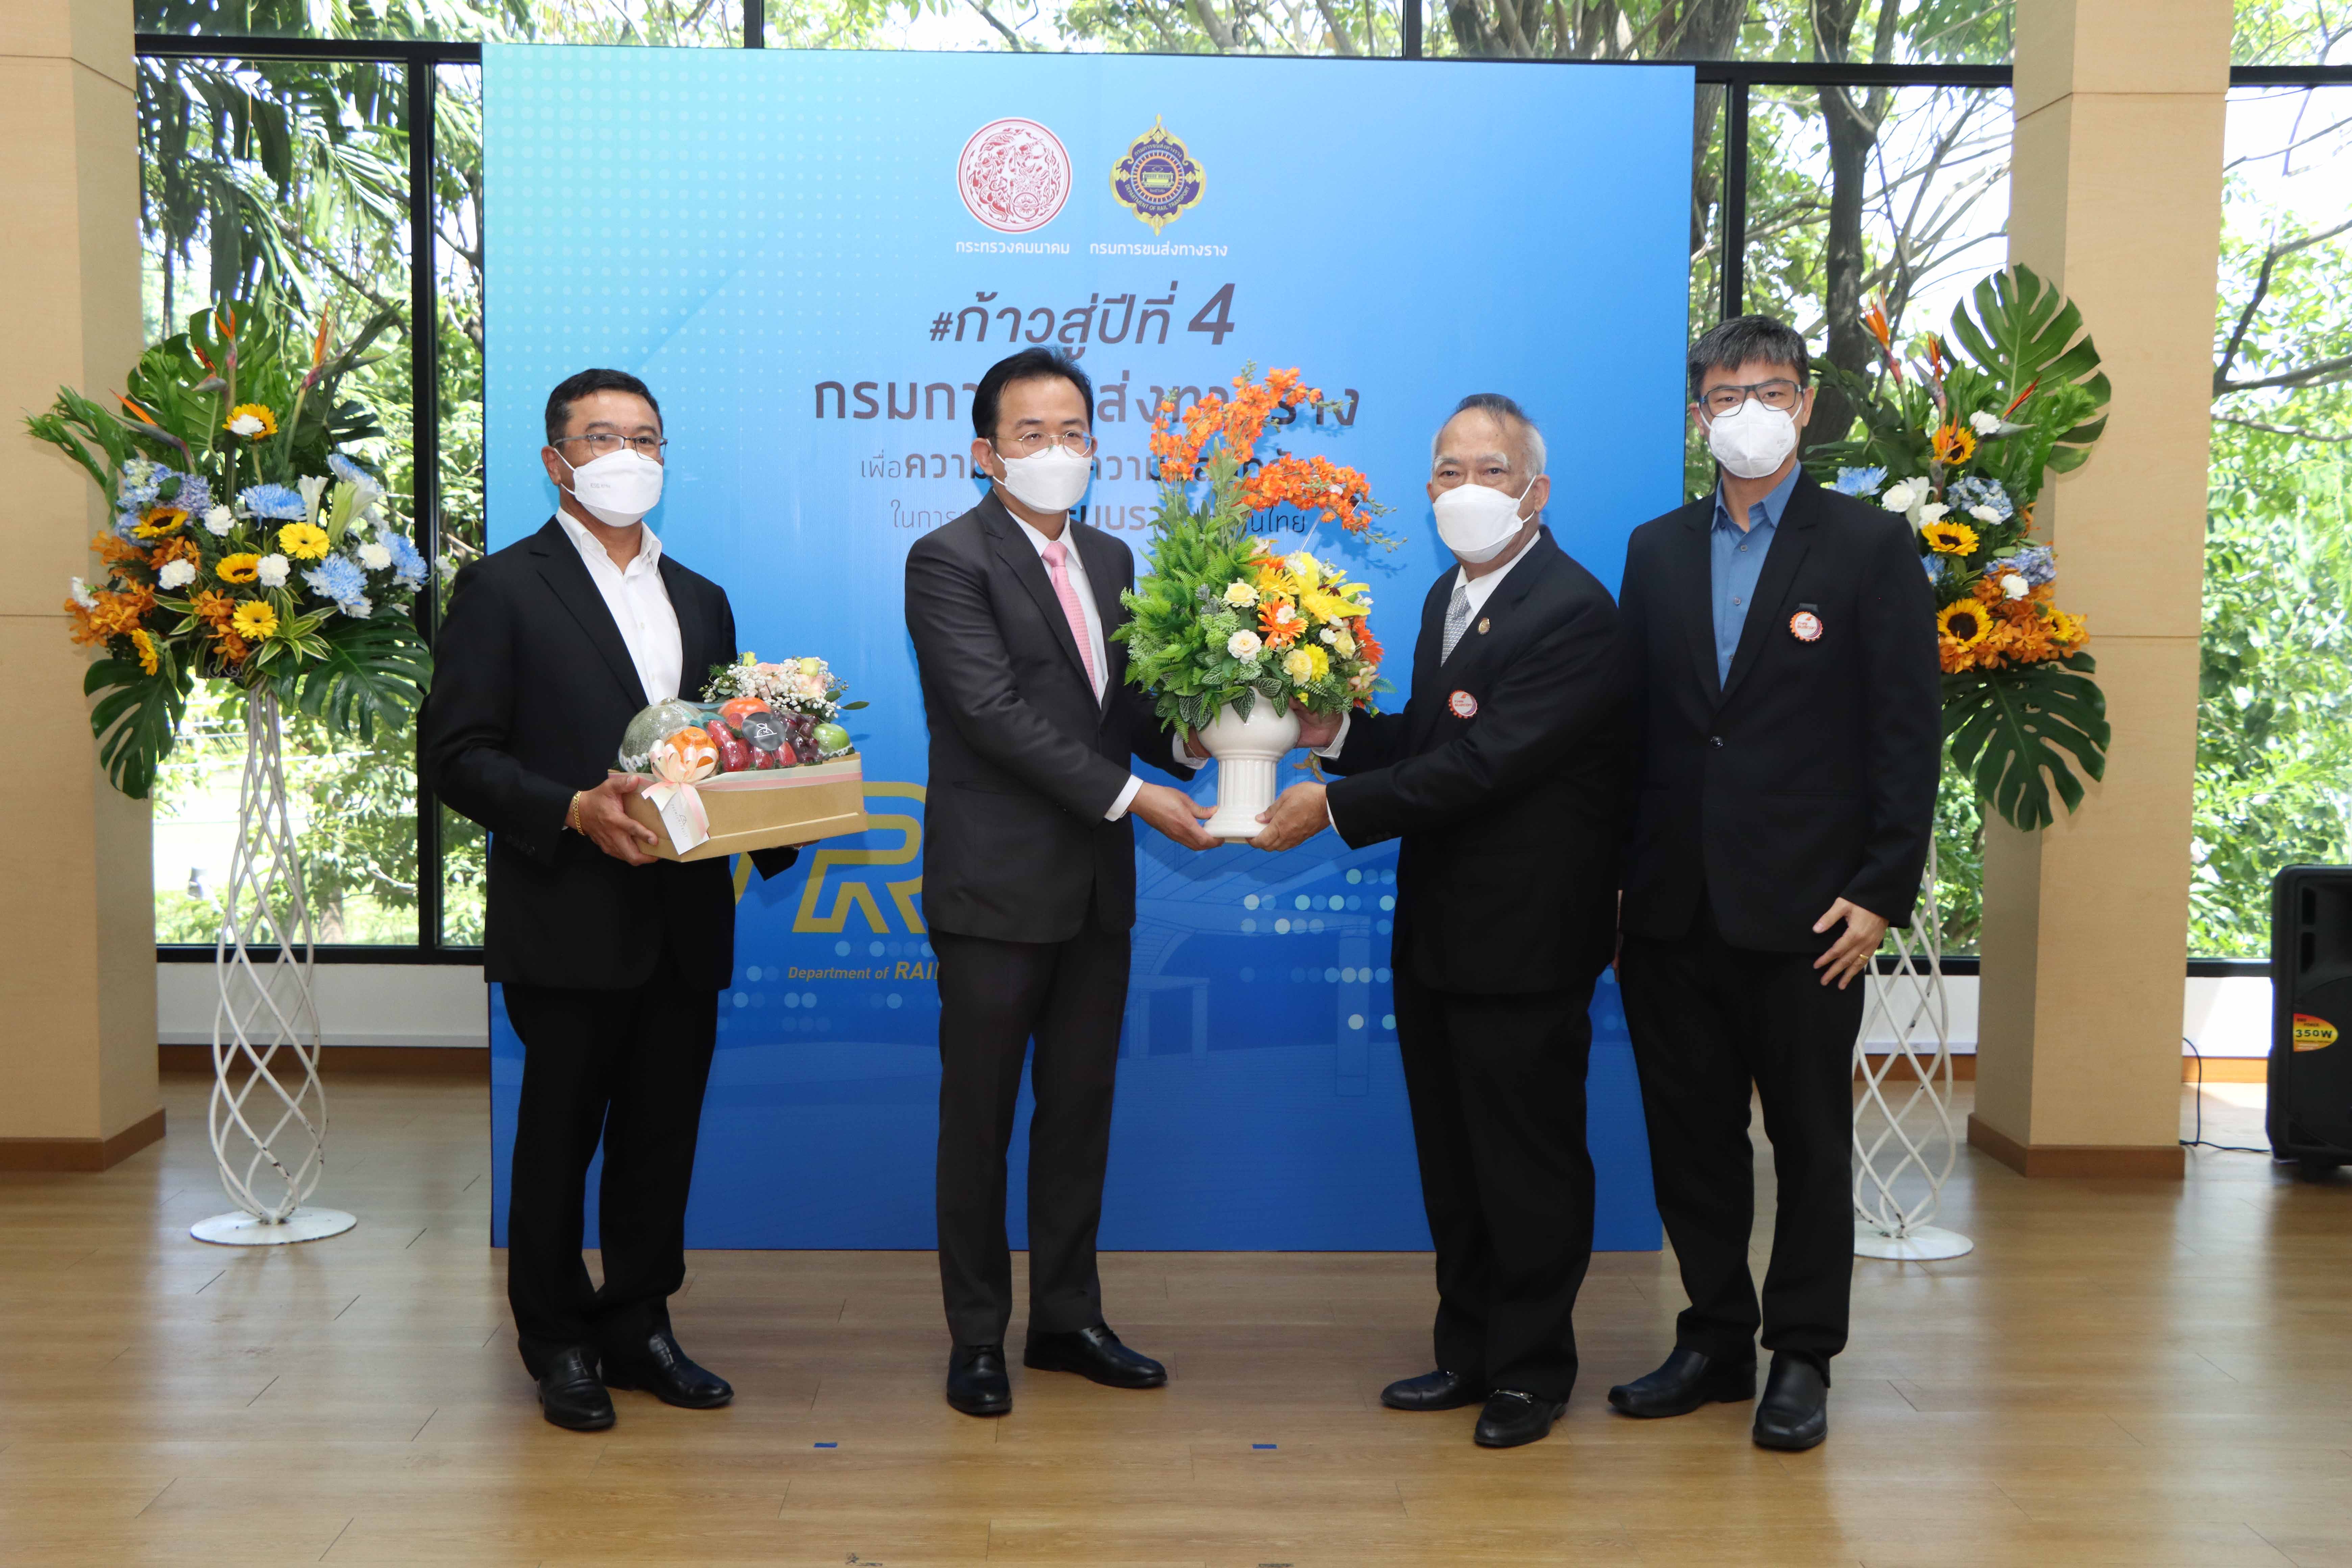 Thai Subcon & AMR Asia ร่วมแสดงความยินดี เนื่องในโอกาสวันคล้ายวันสถาปนากรมการขนส่งทางราง ครบรอบ 3 ปี